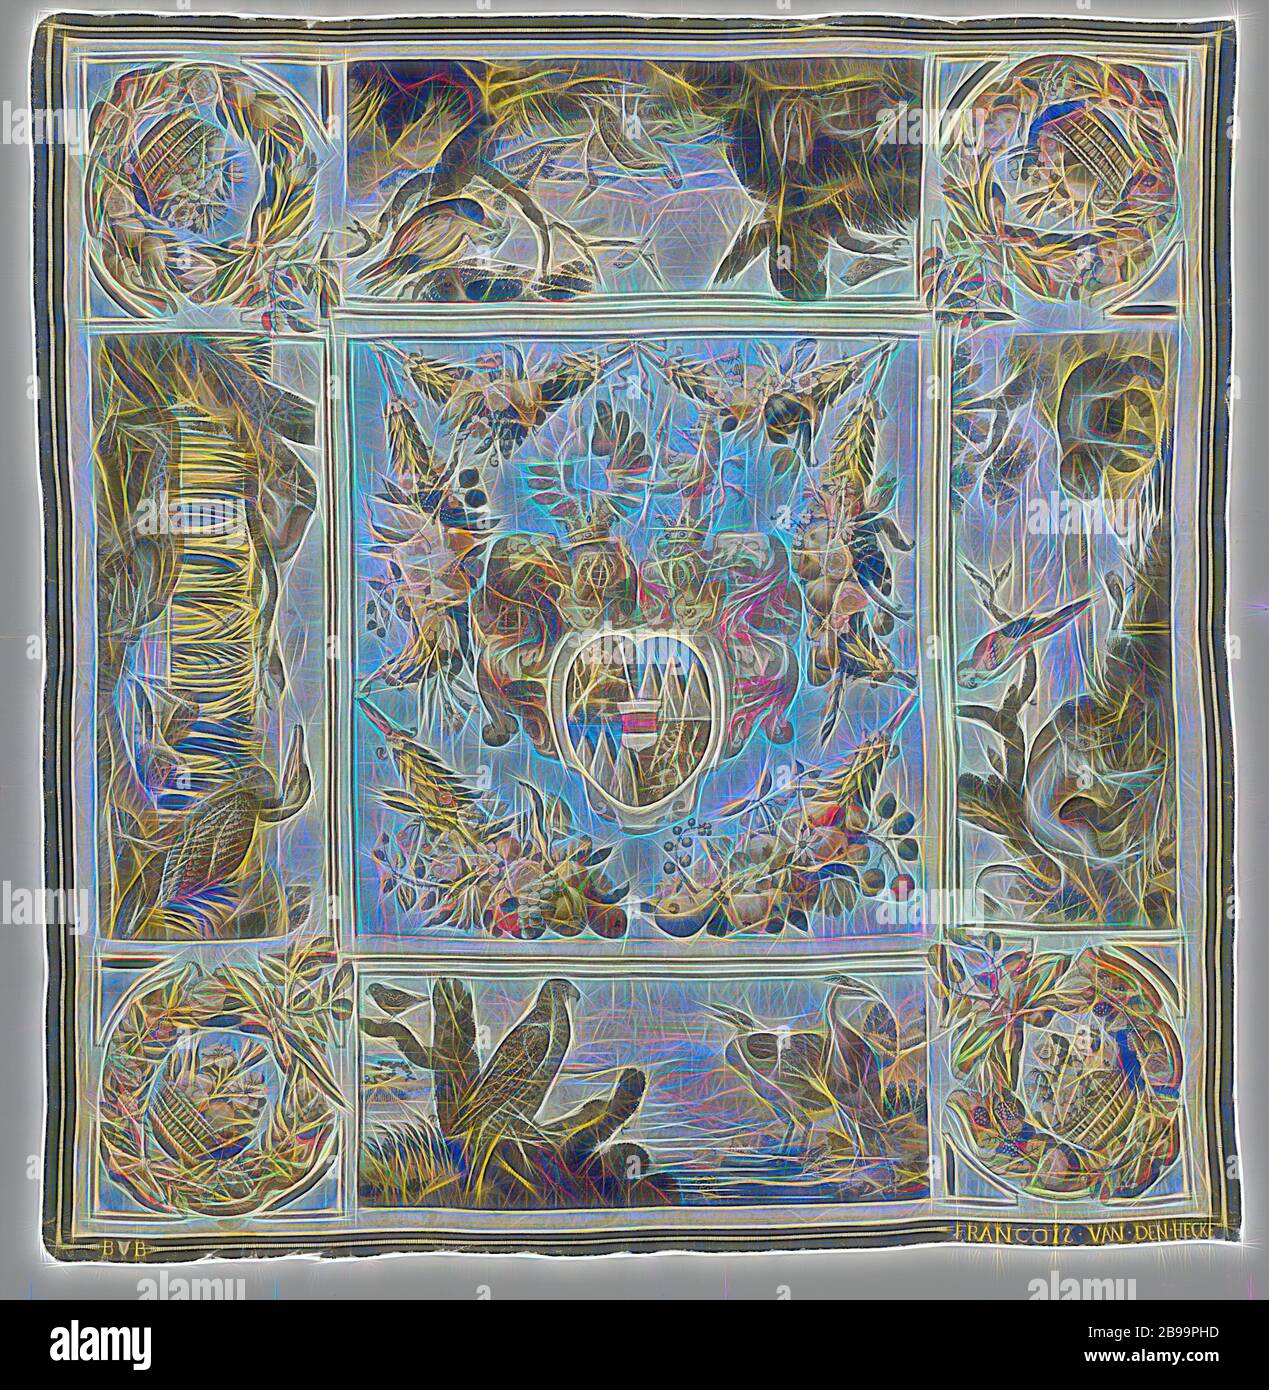 Tovaglia con stemma di Johann Baptist Kaltschmidt von Eisenberg, consiglio segreto dell'arciduca Leopold Wilhelm, tovaglia di tessuto arazzo con al centro lo stemma di Johann Baptist Kaltschmidt von Eisenberg (1604-1662) con scudo cardiaco Austria su terreno azzurro pallido, Sui lati appesi con animali in un paesaggio e negli angoli con un cesto di fiori e frutti all'interno di una corona di foglie, fiori e frutti., Frans i van den Hecke, Bruxelles, c.. 1646 - c. 1659, ketting, inslag, arazzi, h 276.5 cm × w 263 cm, Reimagined by Gibon, disegno di calda allegra incandescente di Foto Stock